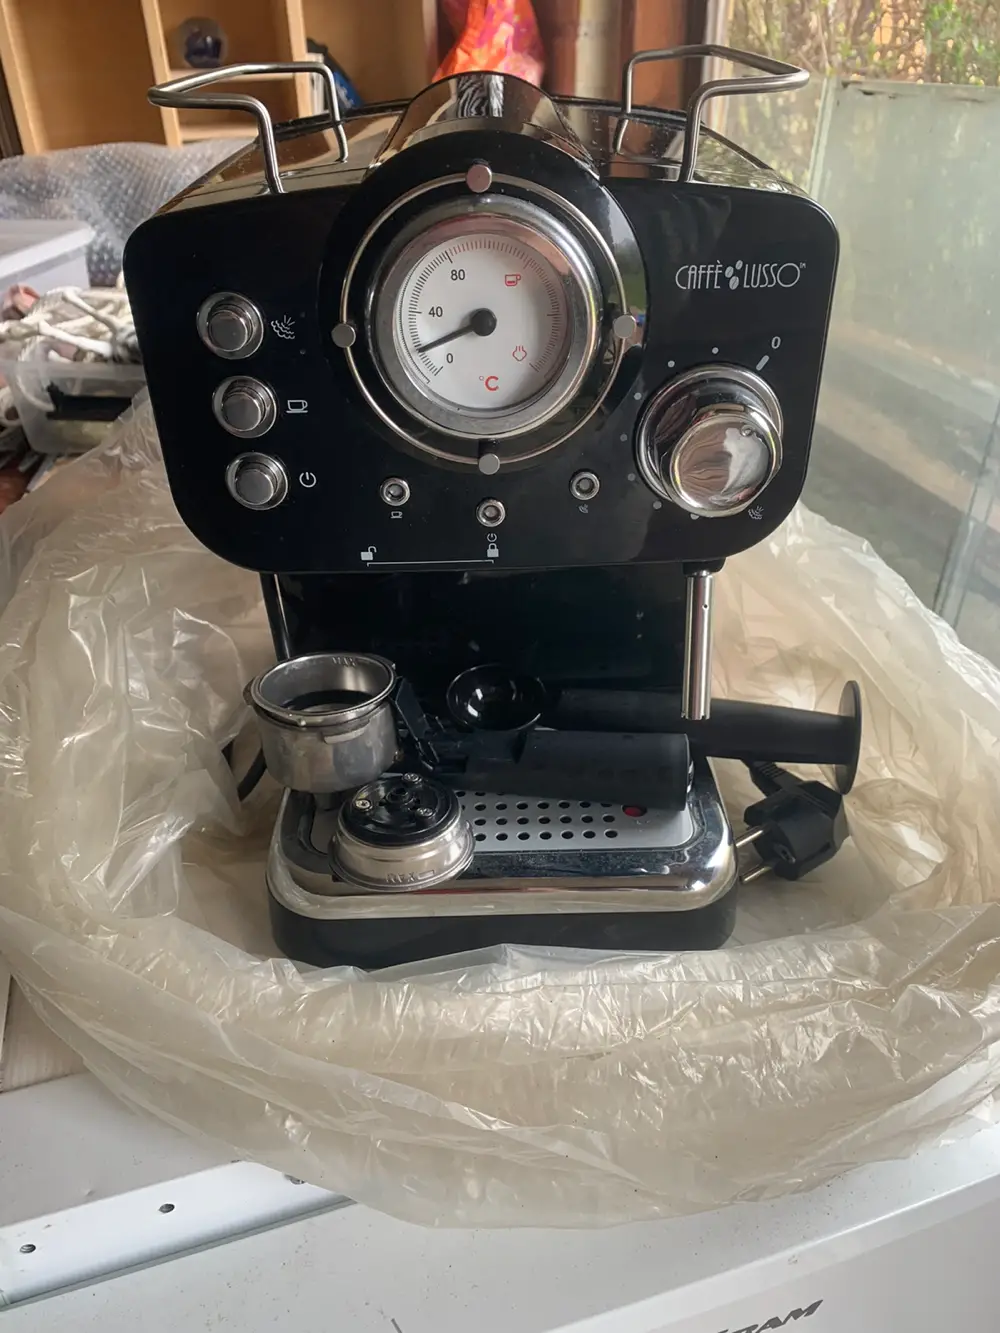 Cafe lusso Espresso maskine af Anja på Reshopper · Shop secondhand til børn, mor og bolig